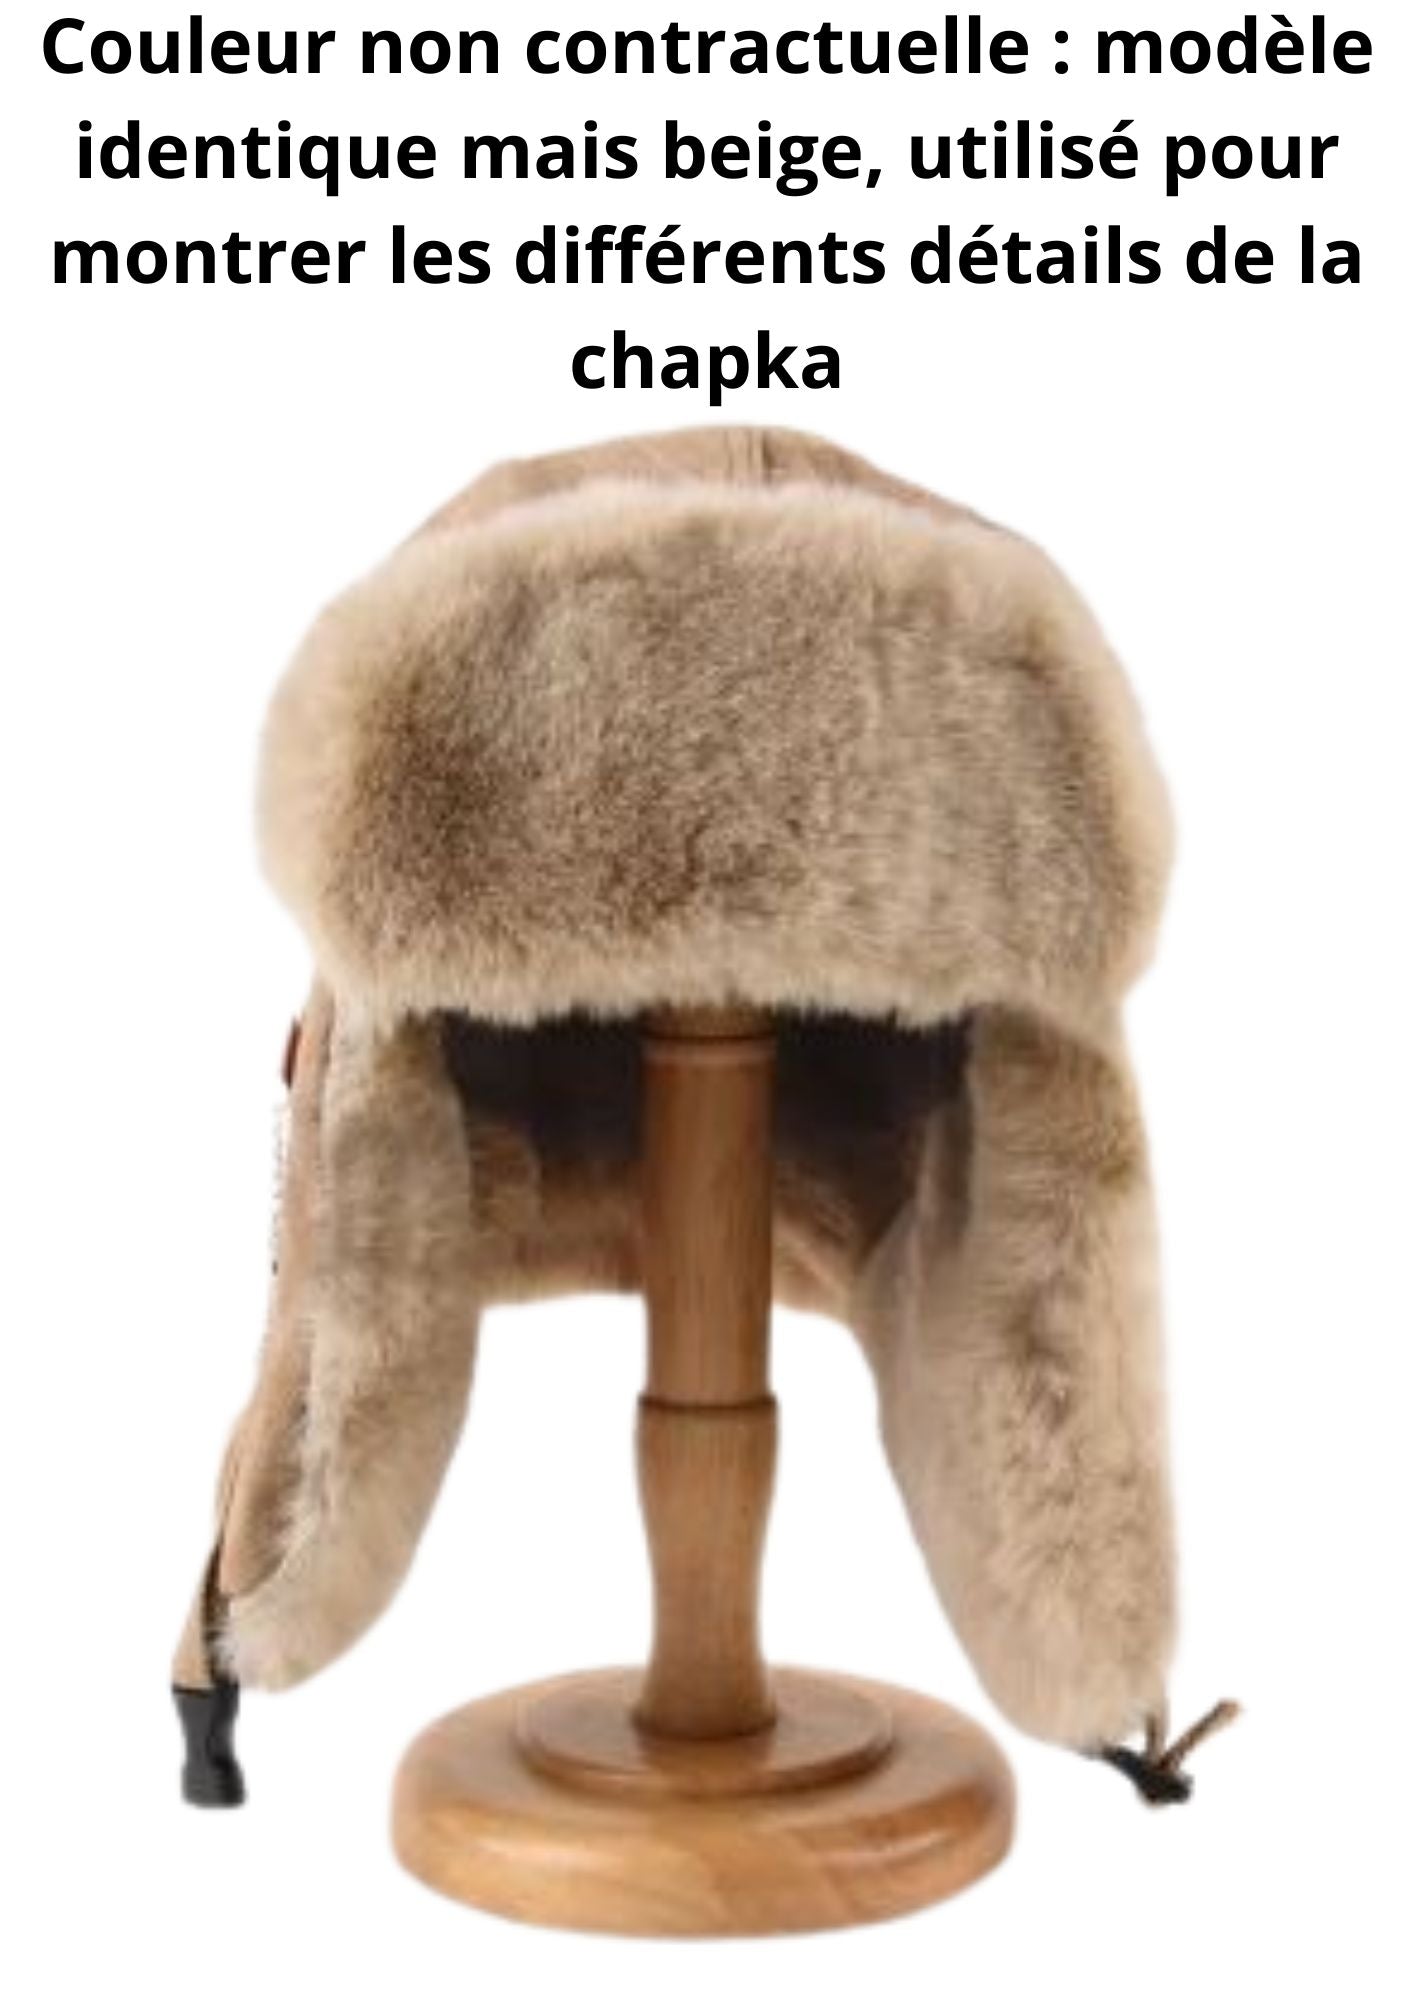 Chapka mouton femme Coloris pantoufles Chocolat Taille de casques 52/55